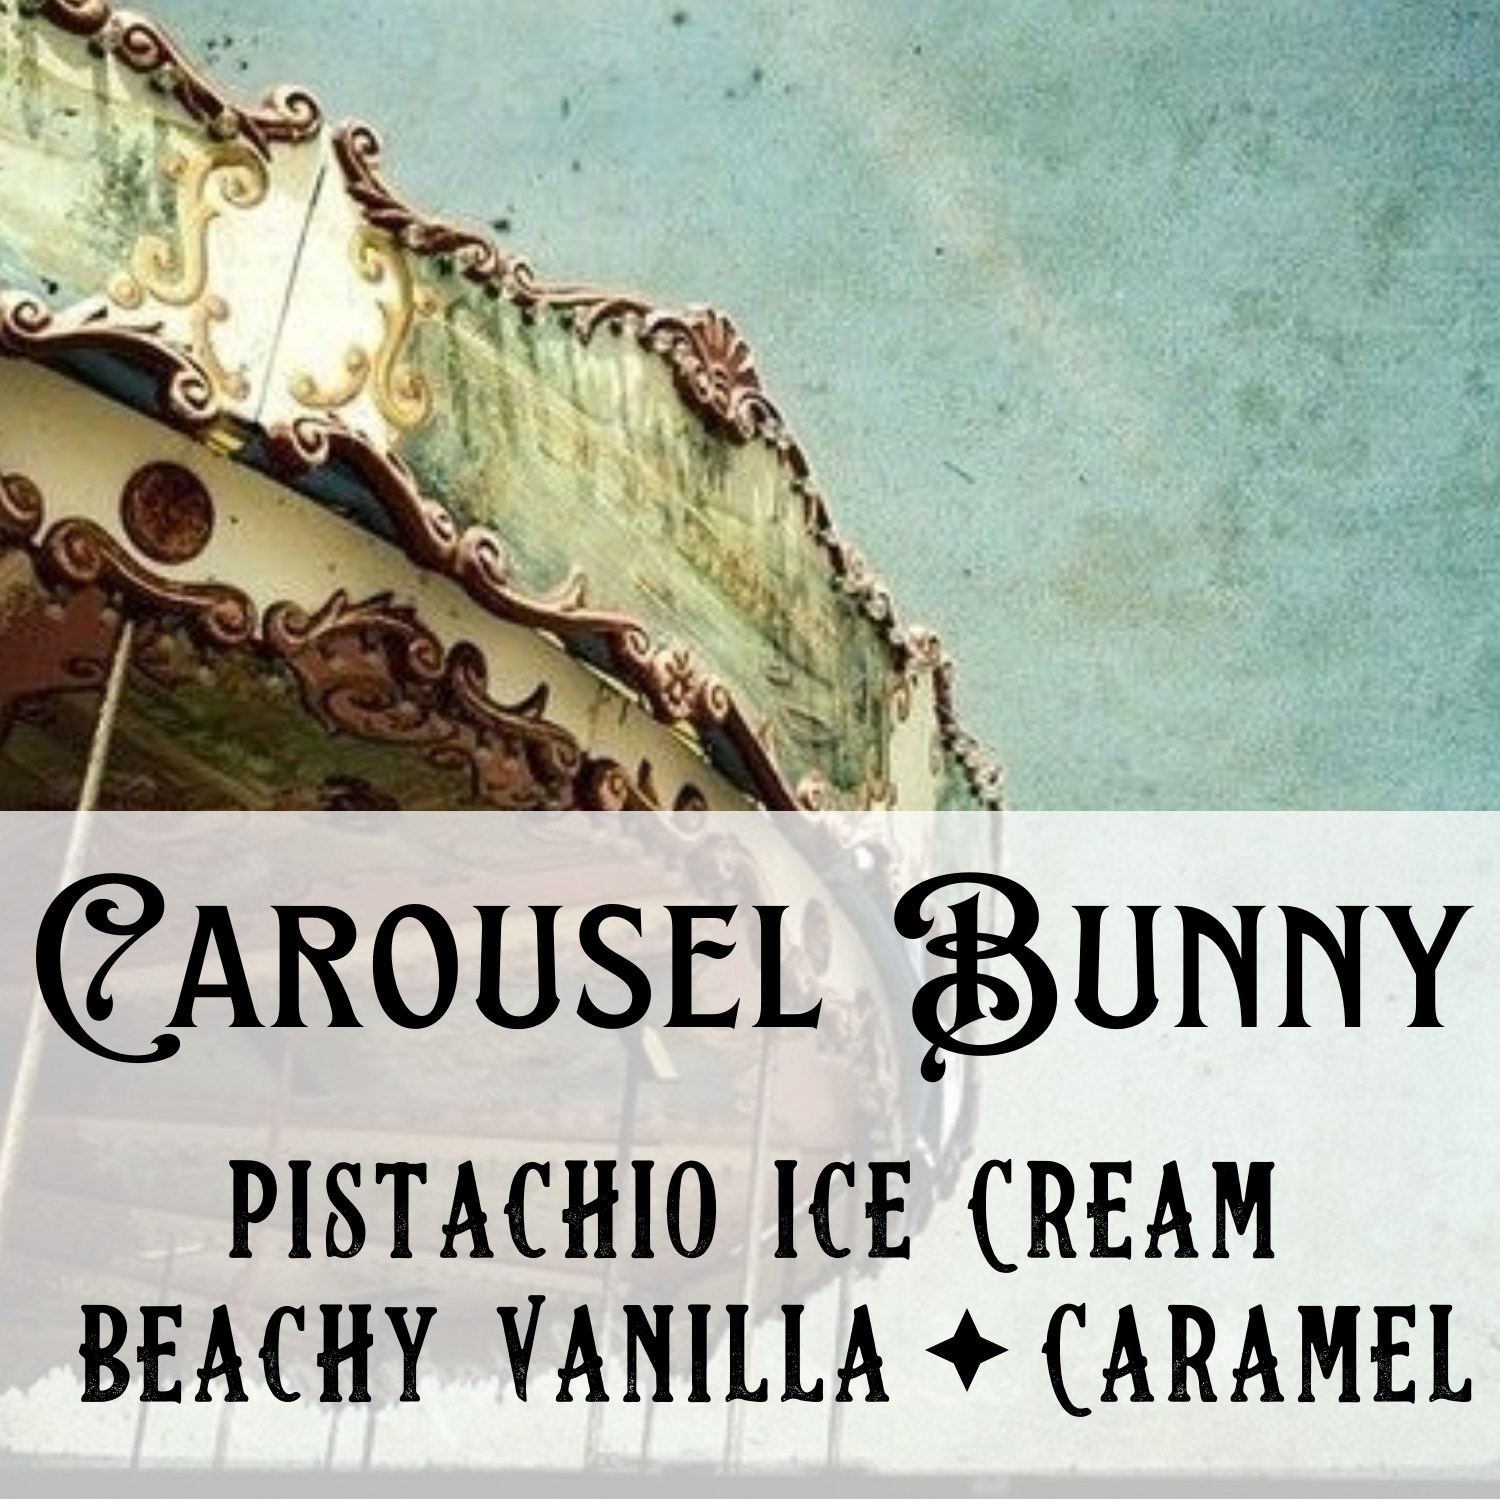 Carousel Bunny